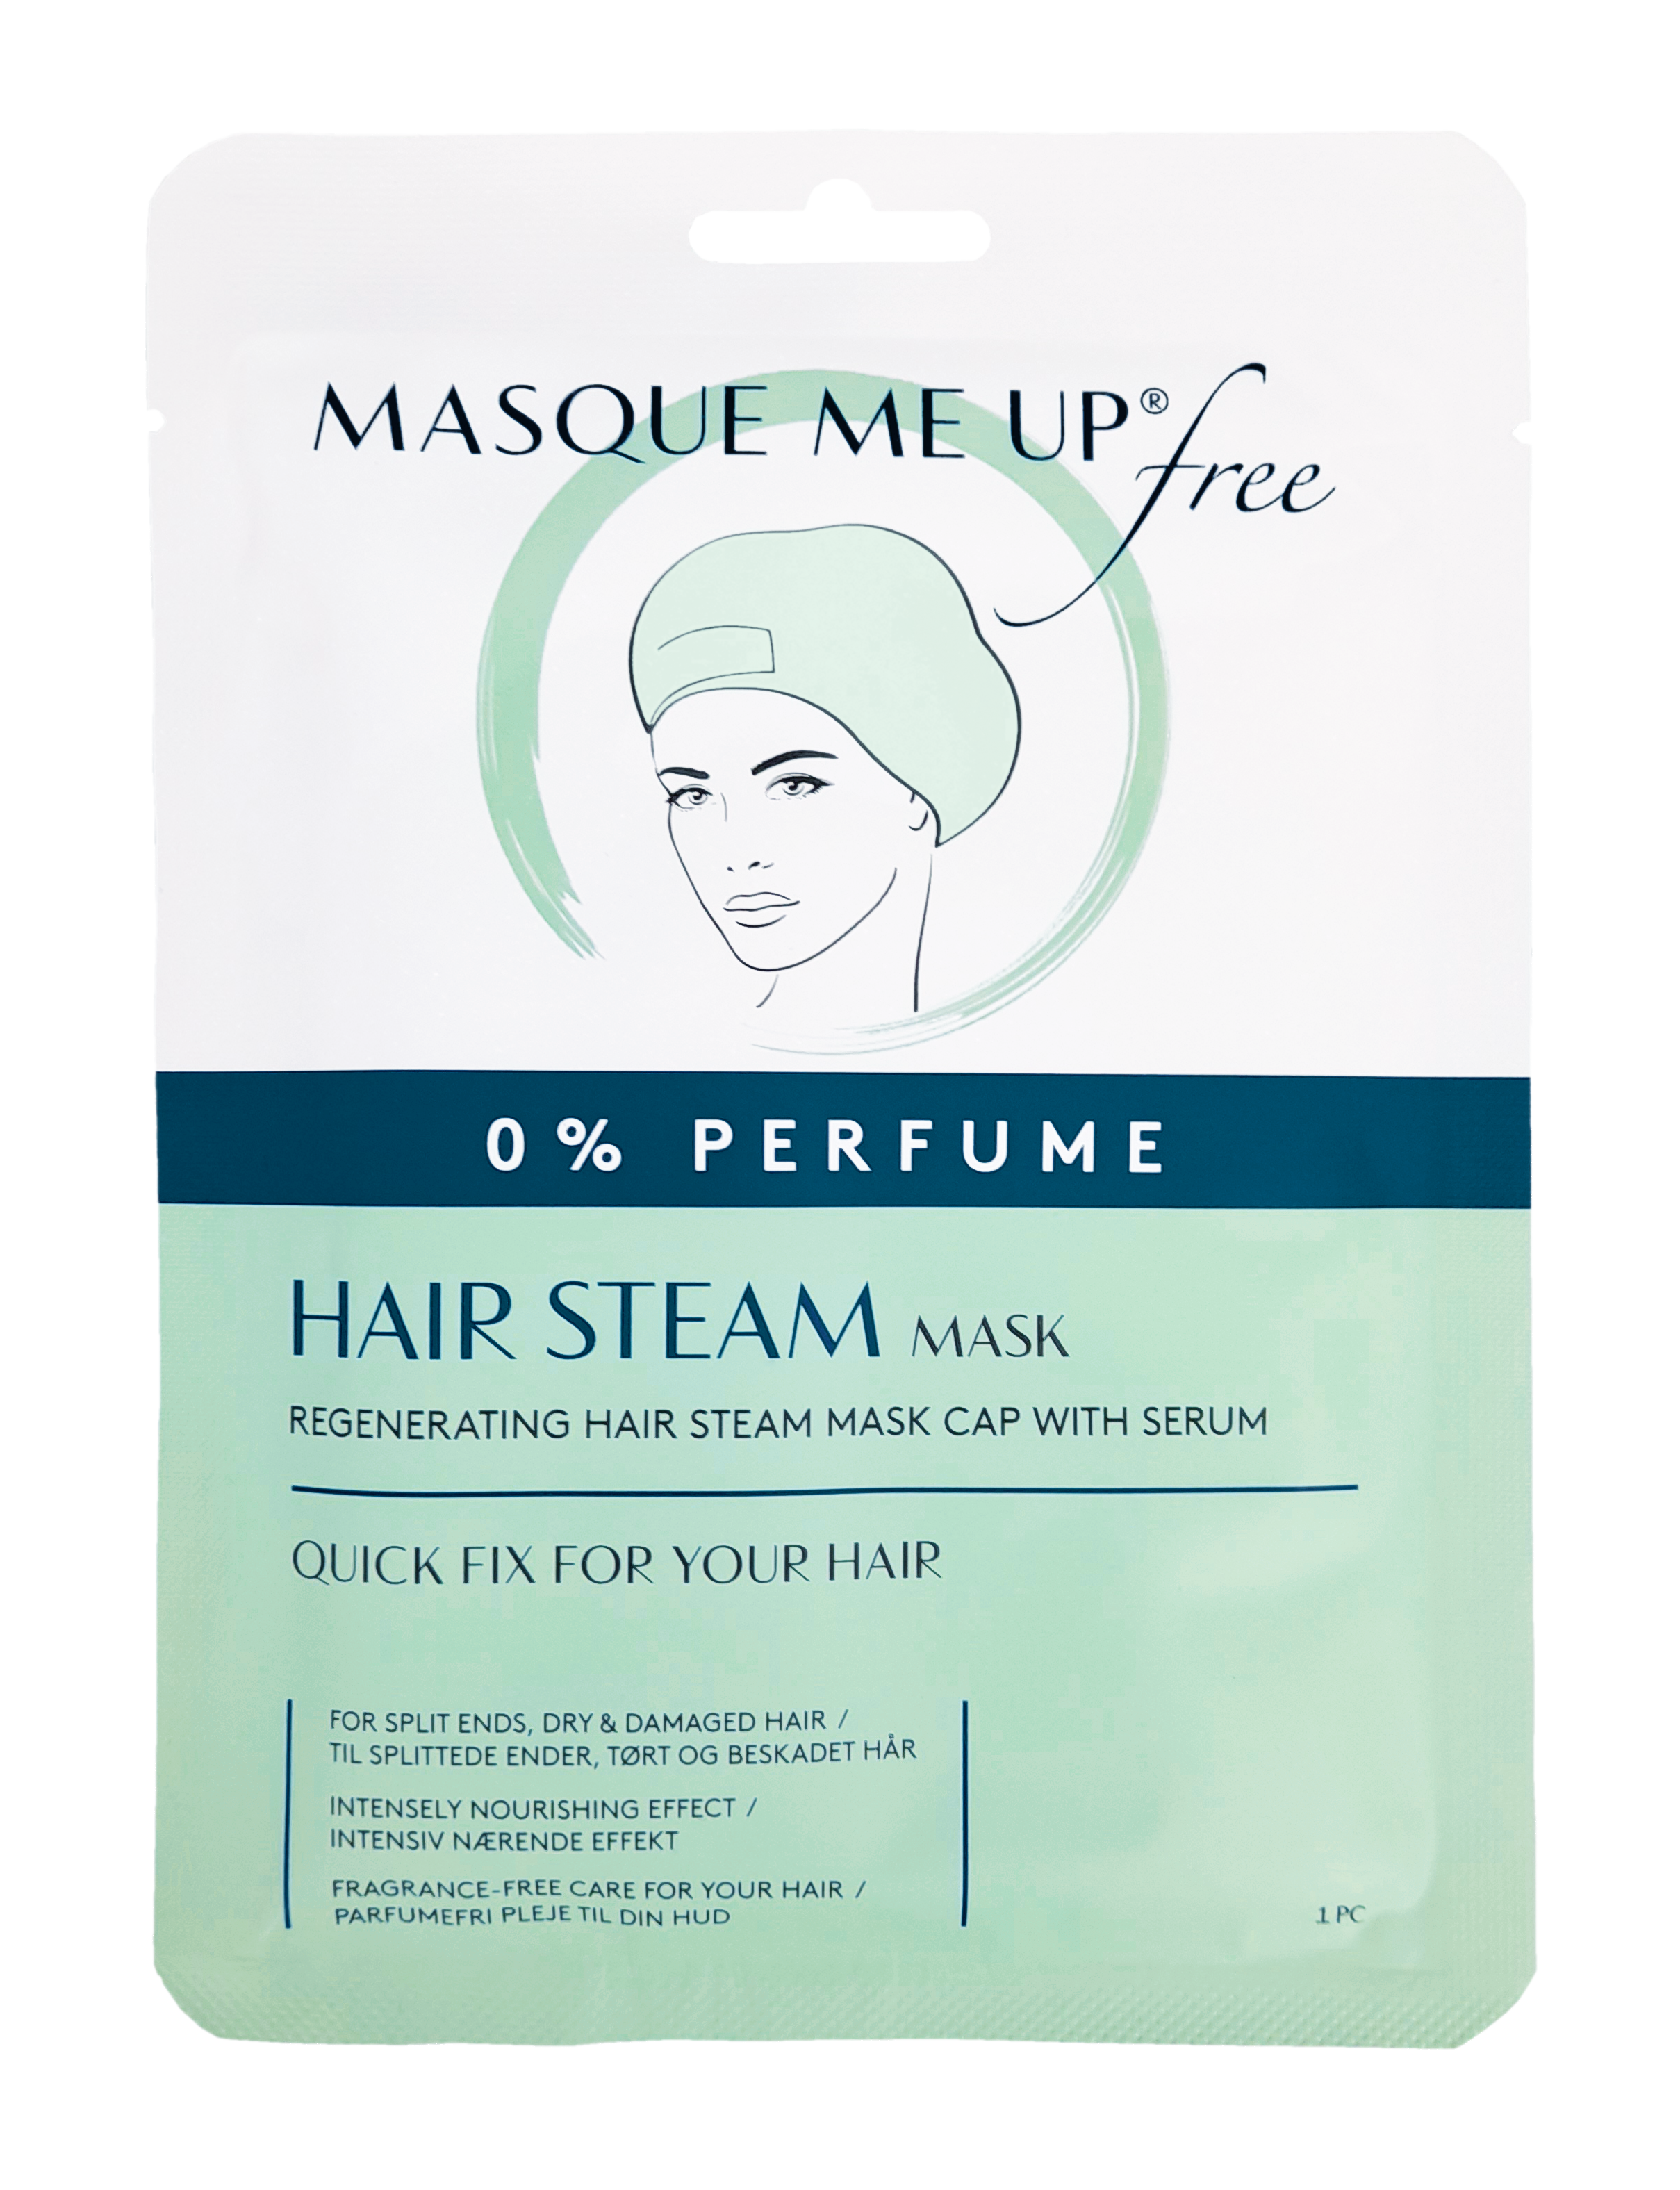 Free Hair Steam Mask